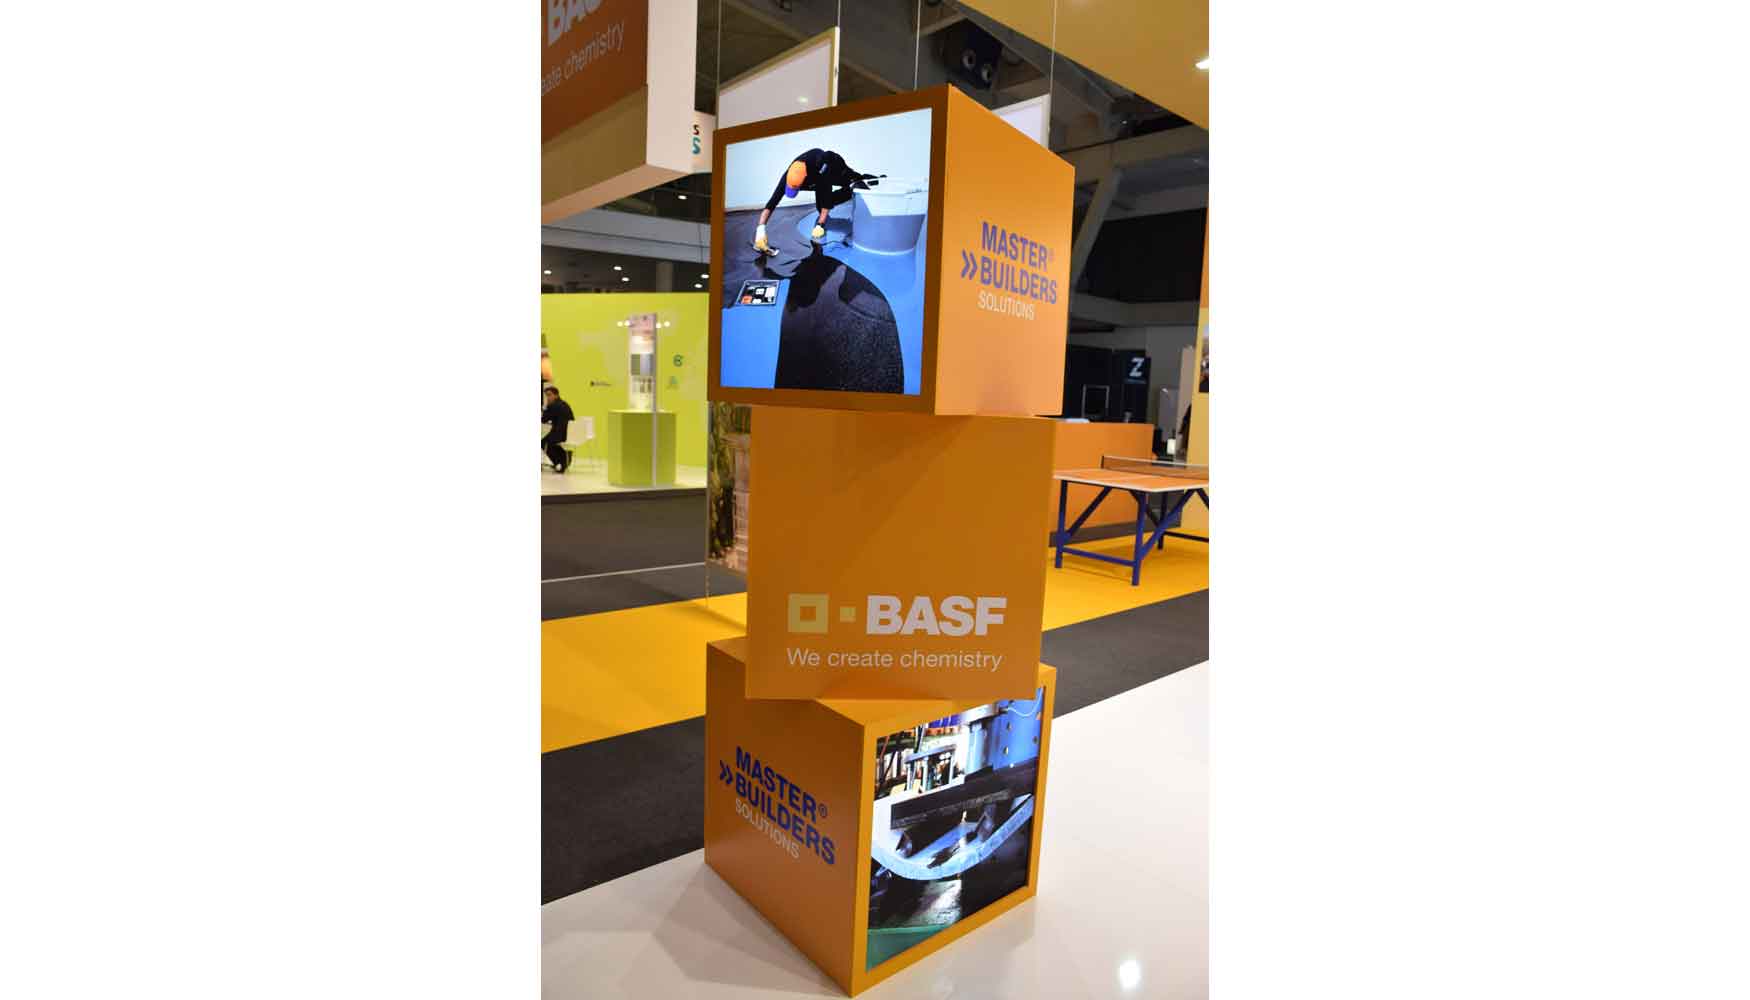 Las innovadoras soluciones para la construccin de la marca Master Builders Solutions de BASF, estarn una vez ms presentes en BBConstrumat...